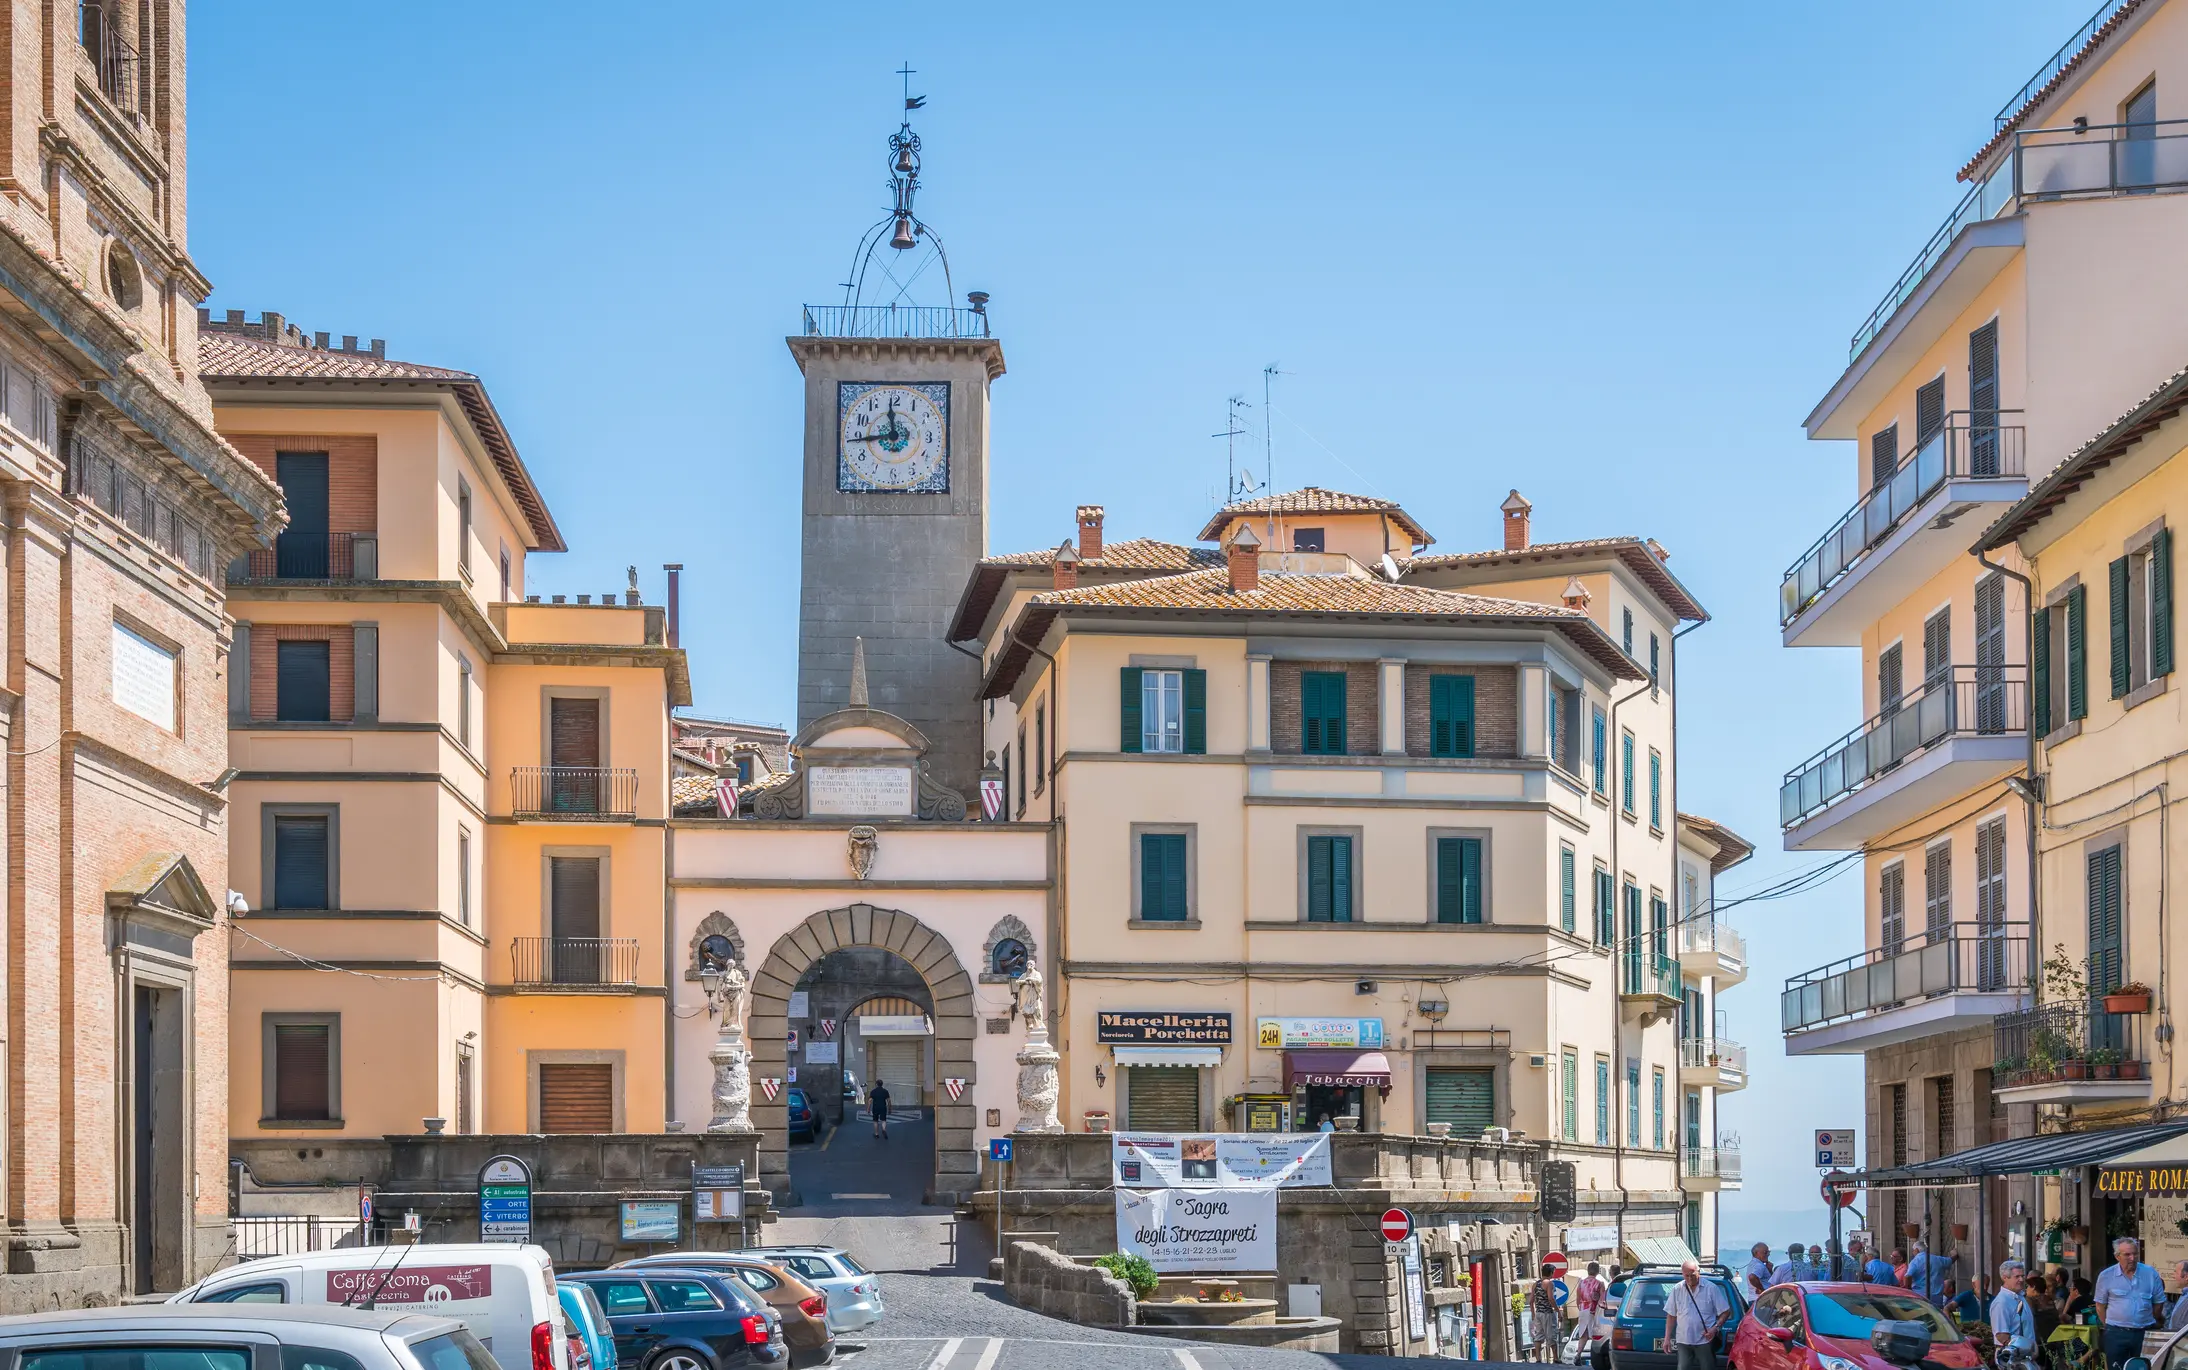 A view of the town piazza in Soriano nel Cimino, Lazio, Italy